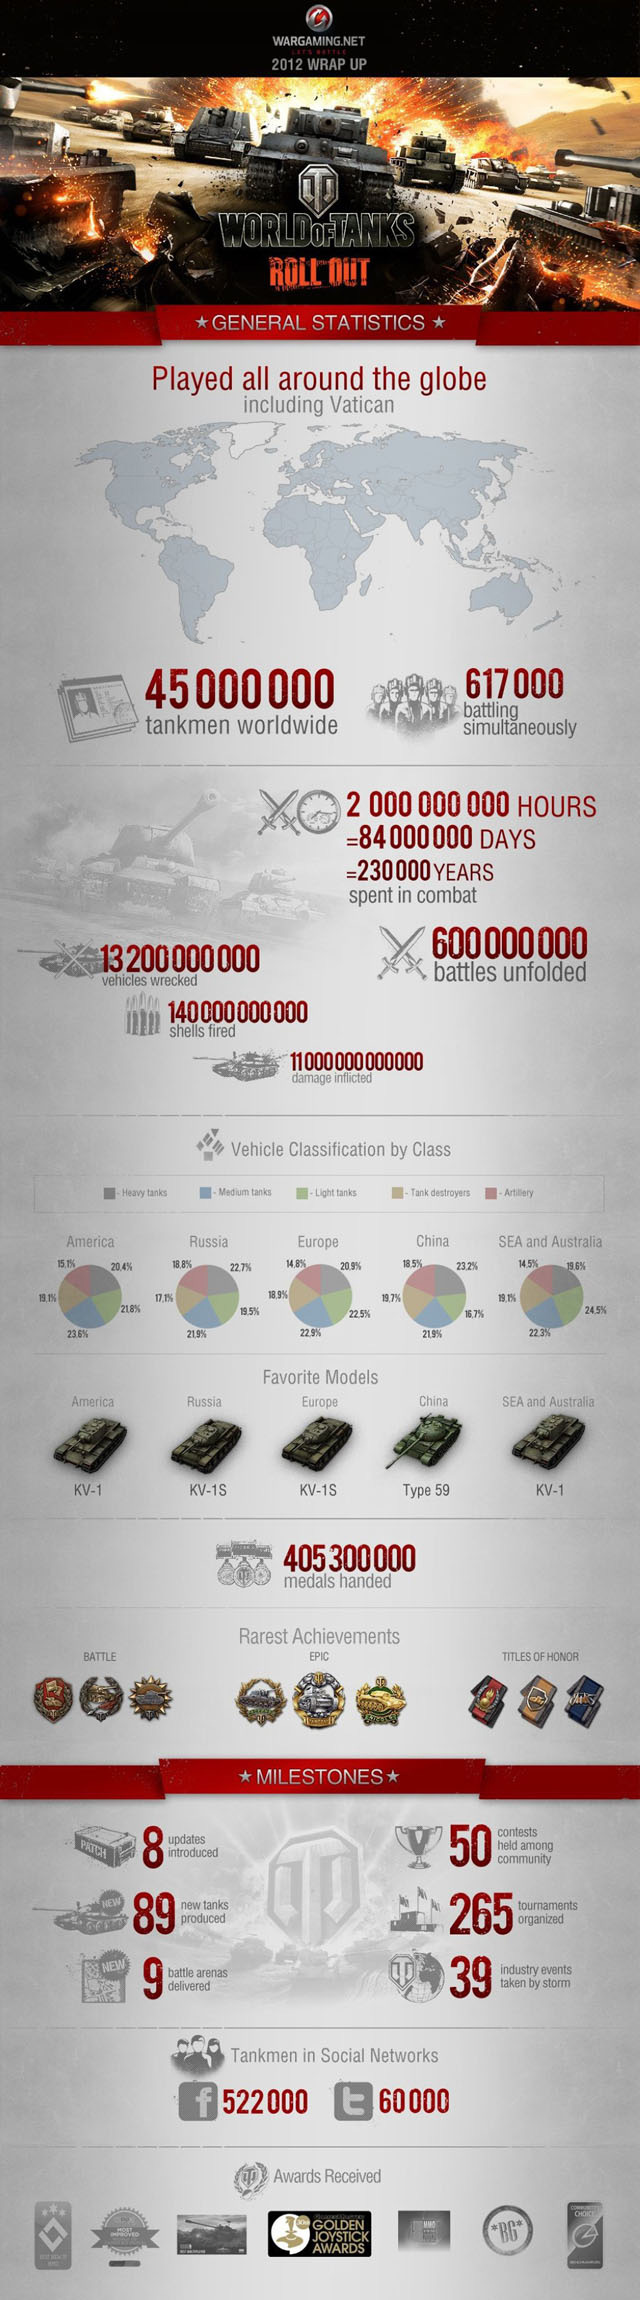 Nhìn lại thành công của World of Tanks trong năm 2012 - Ảnh 2